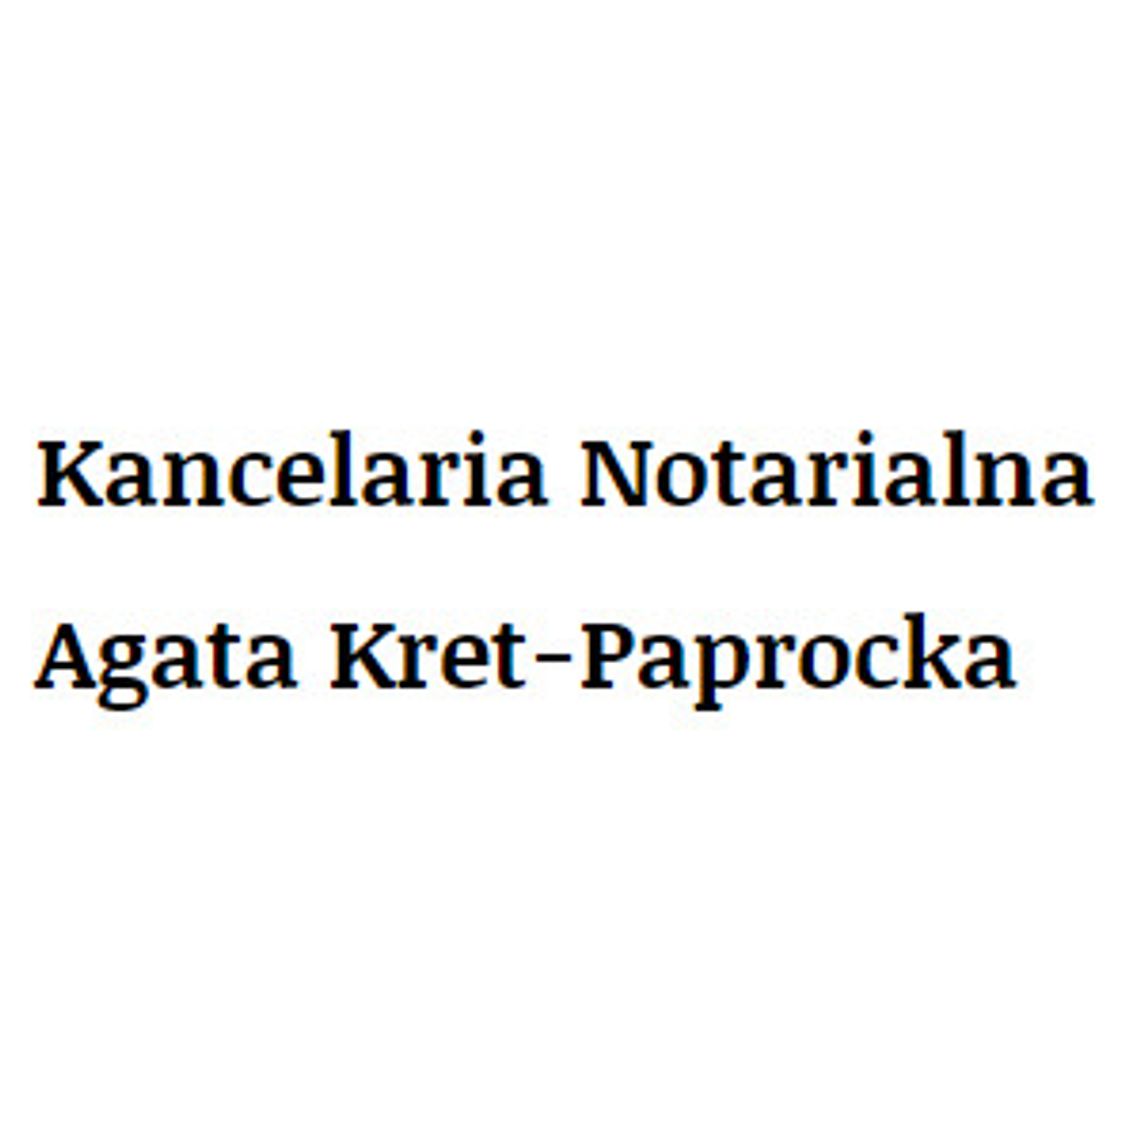 Kancelaria notarialna Rzeszów - Agata Kret-Paprocka